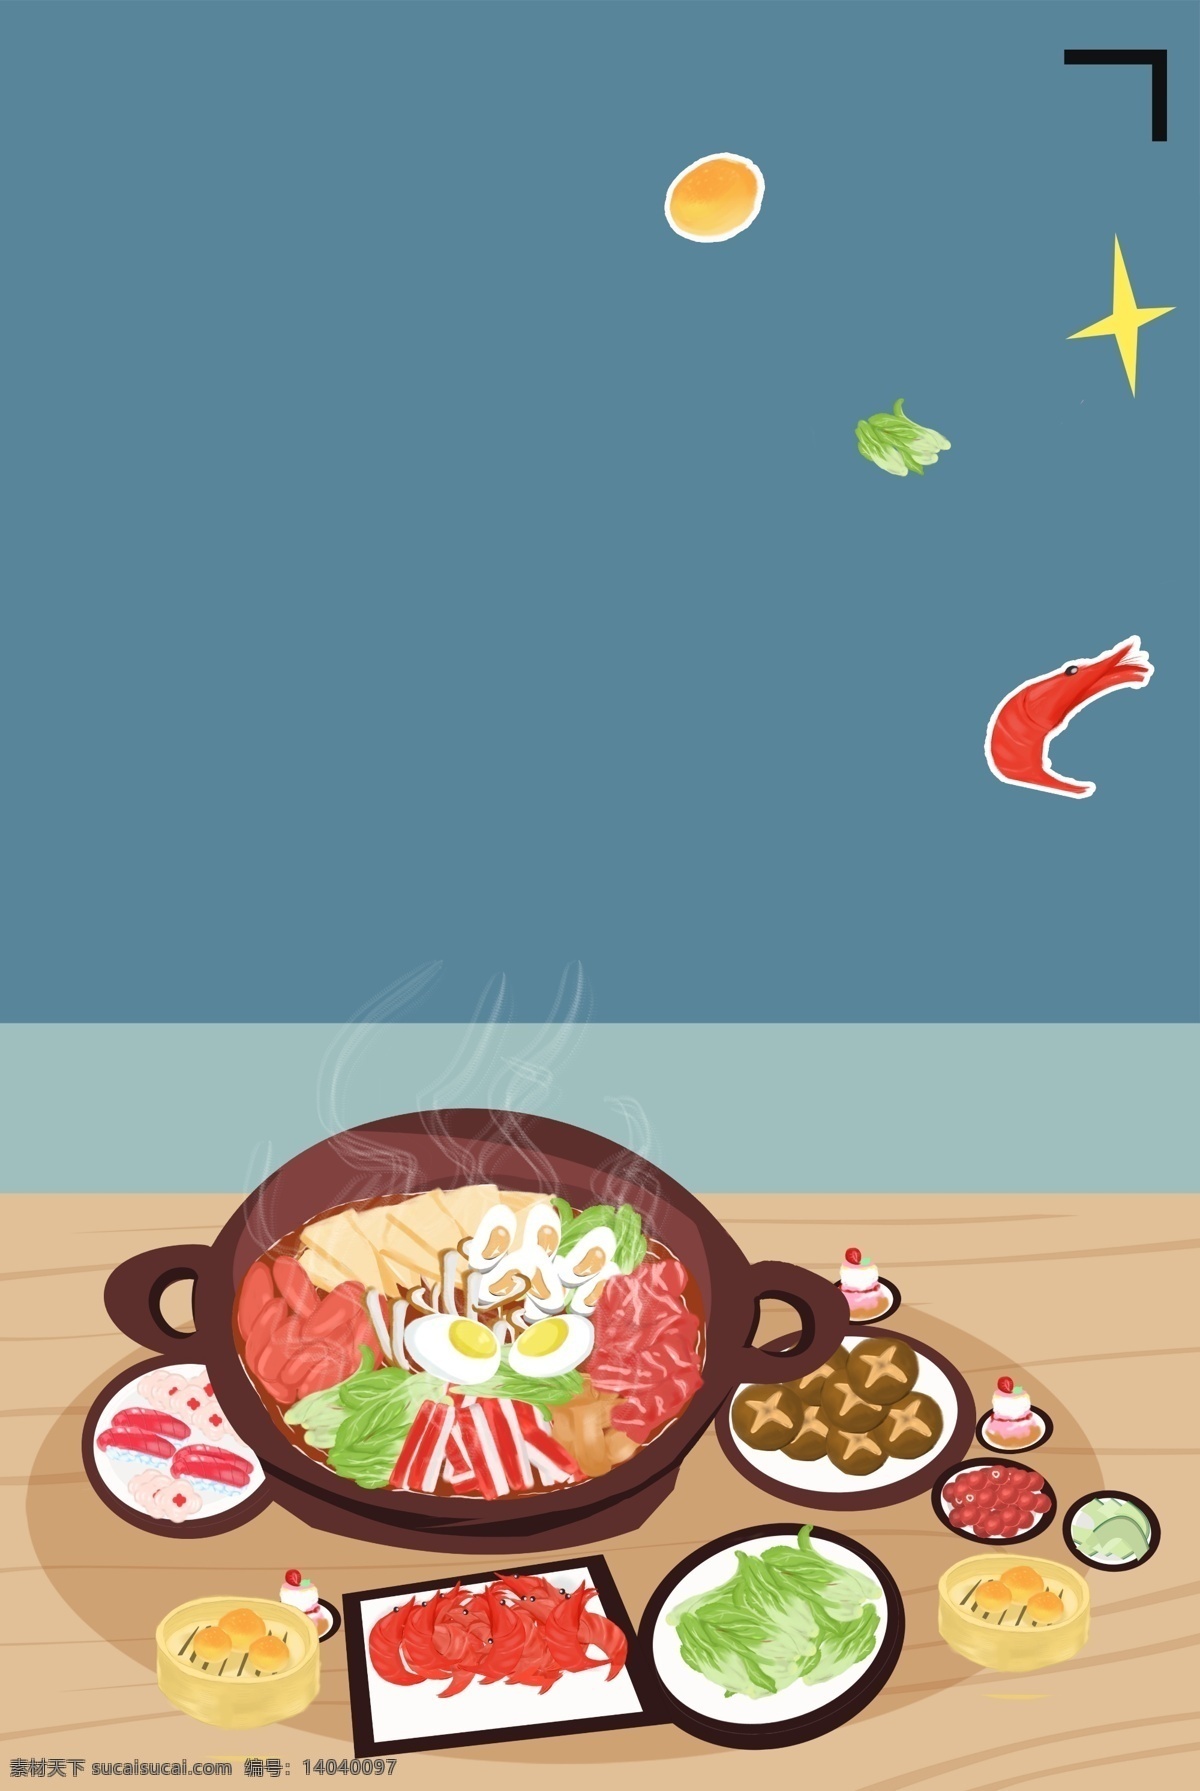 韩式 料理 特色 食品 海报 辣椒 米饭 面食 特色食物 食物 促销海报 食品促销